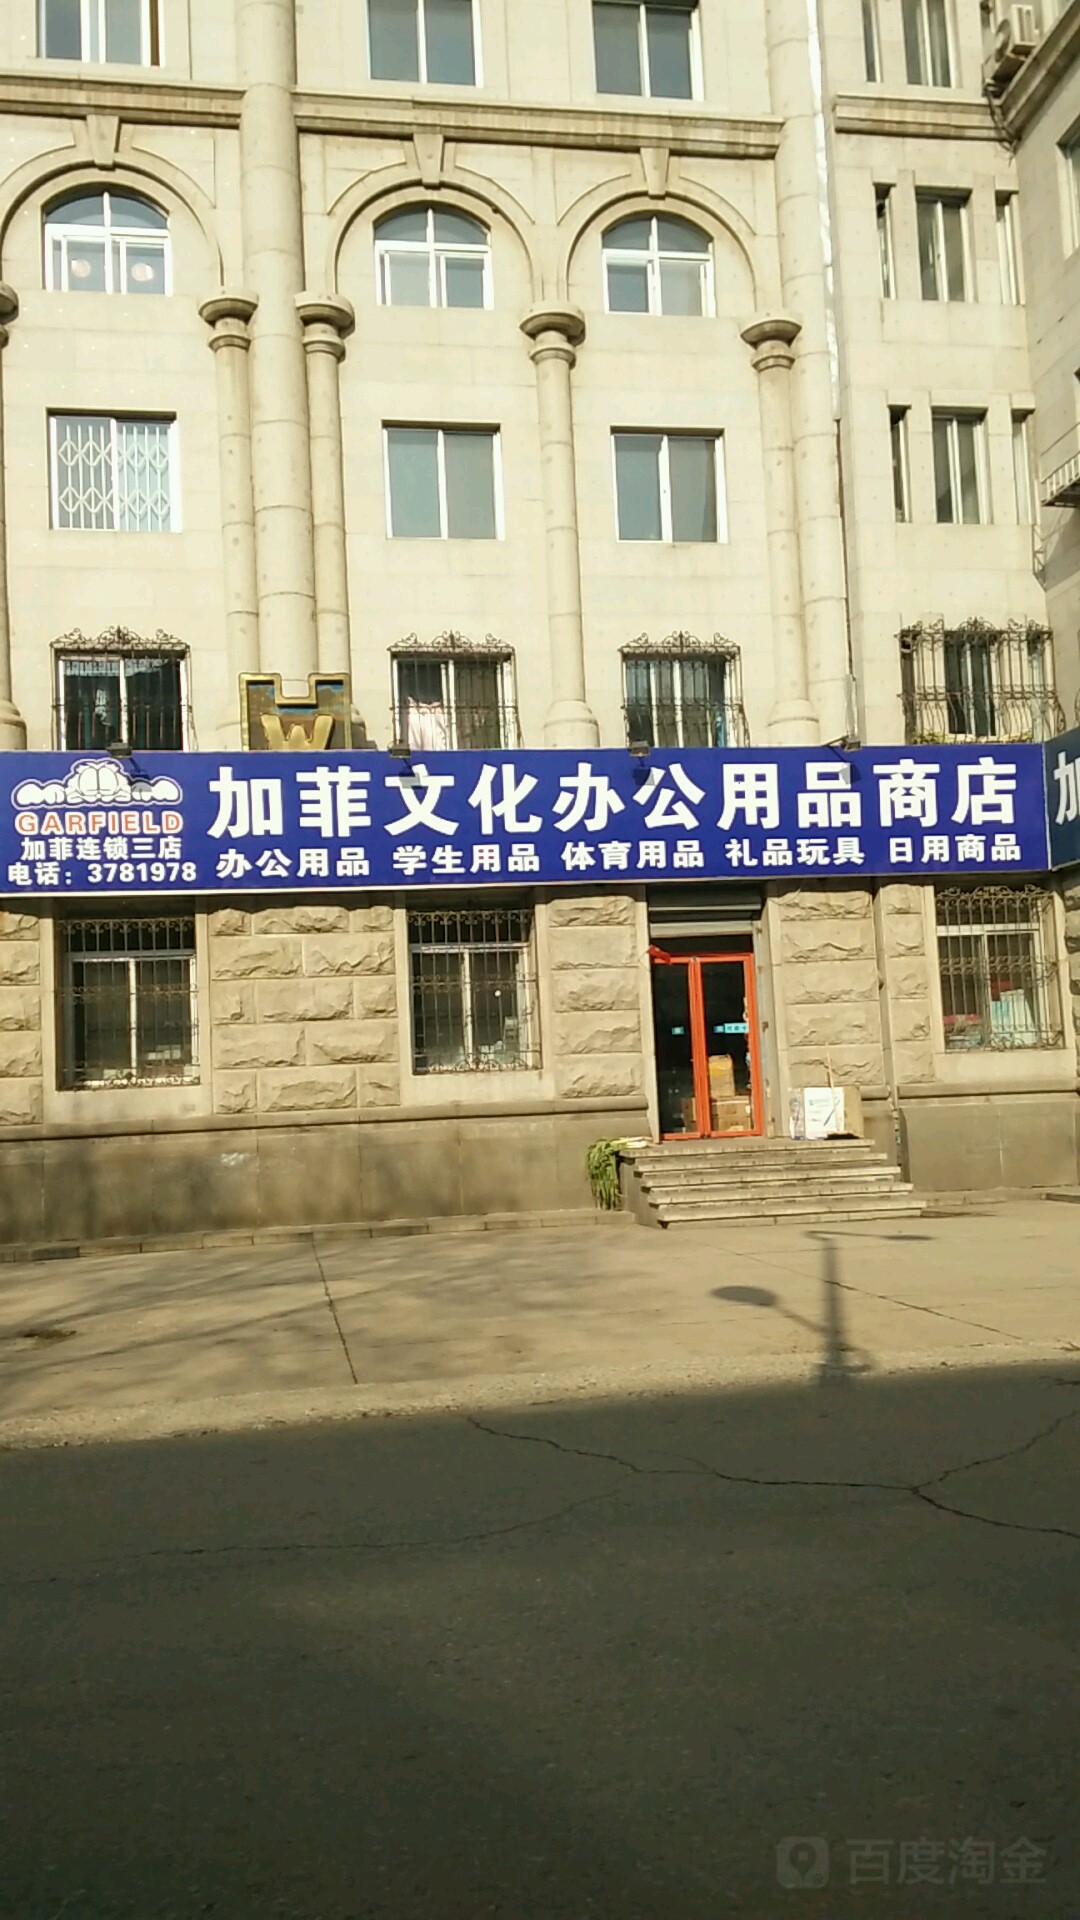 加菲文化办公用品商店(红楼社区东南)